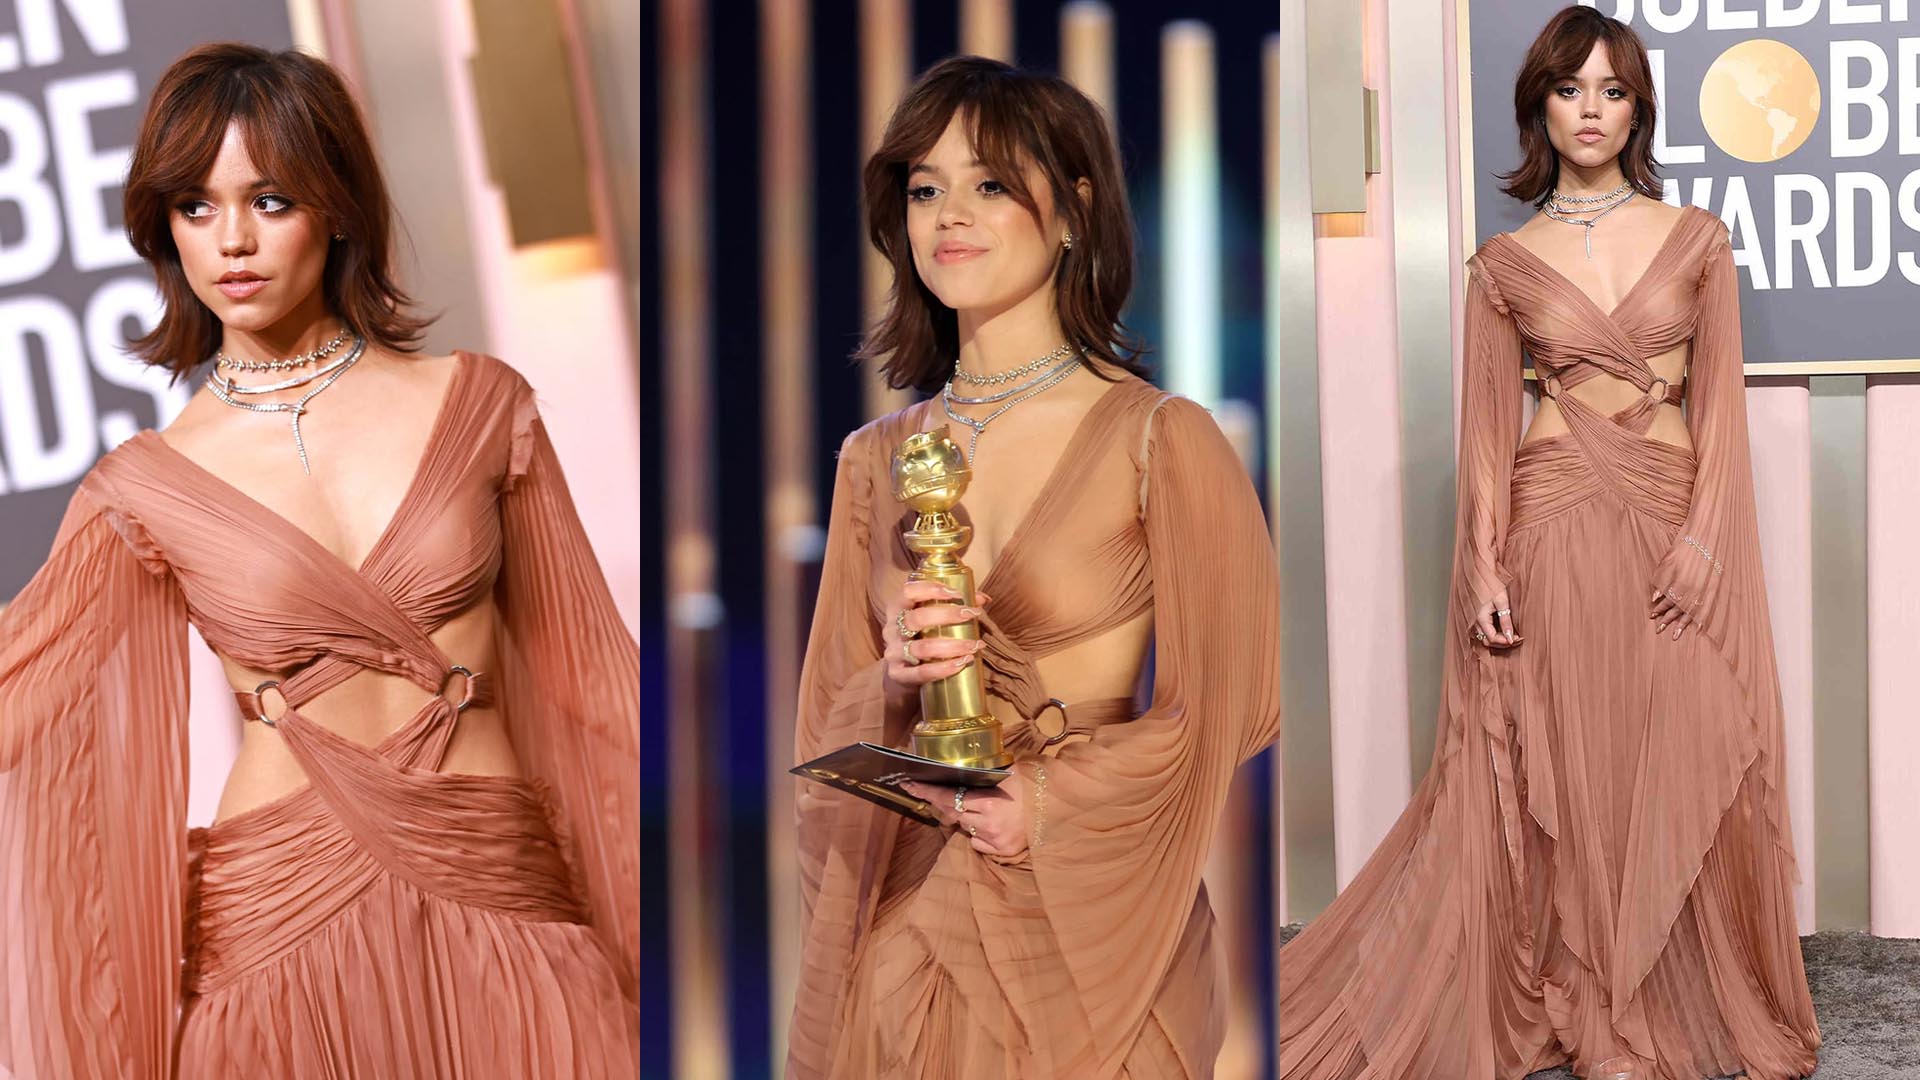 Jenna Ortega Showed Off Abs At Red Carpet Of Golden Globes